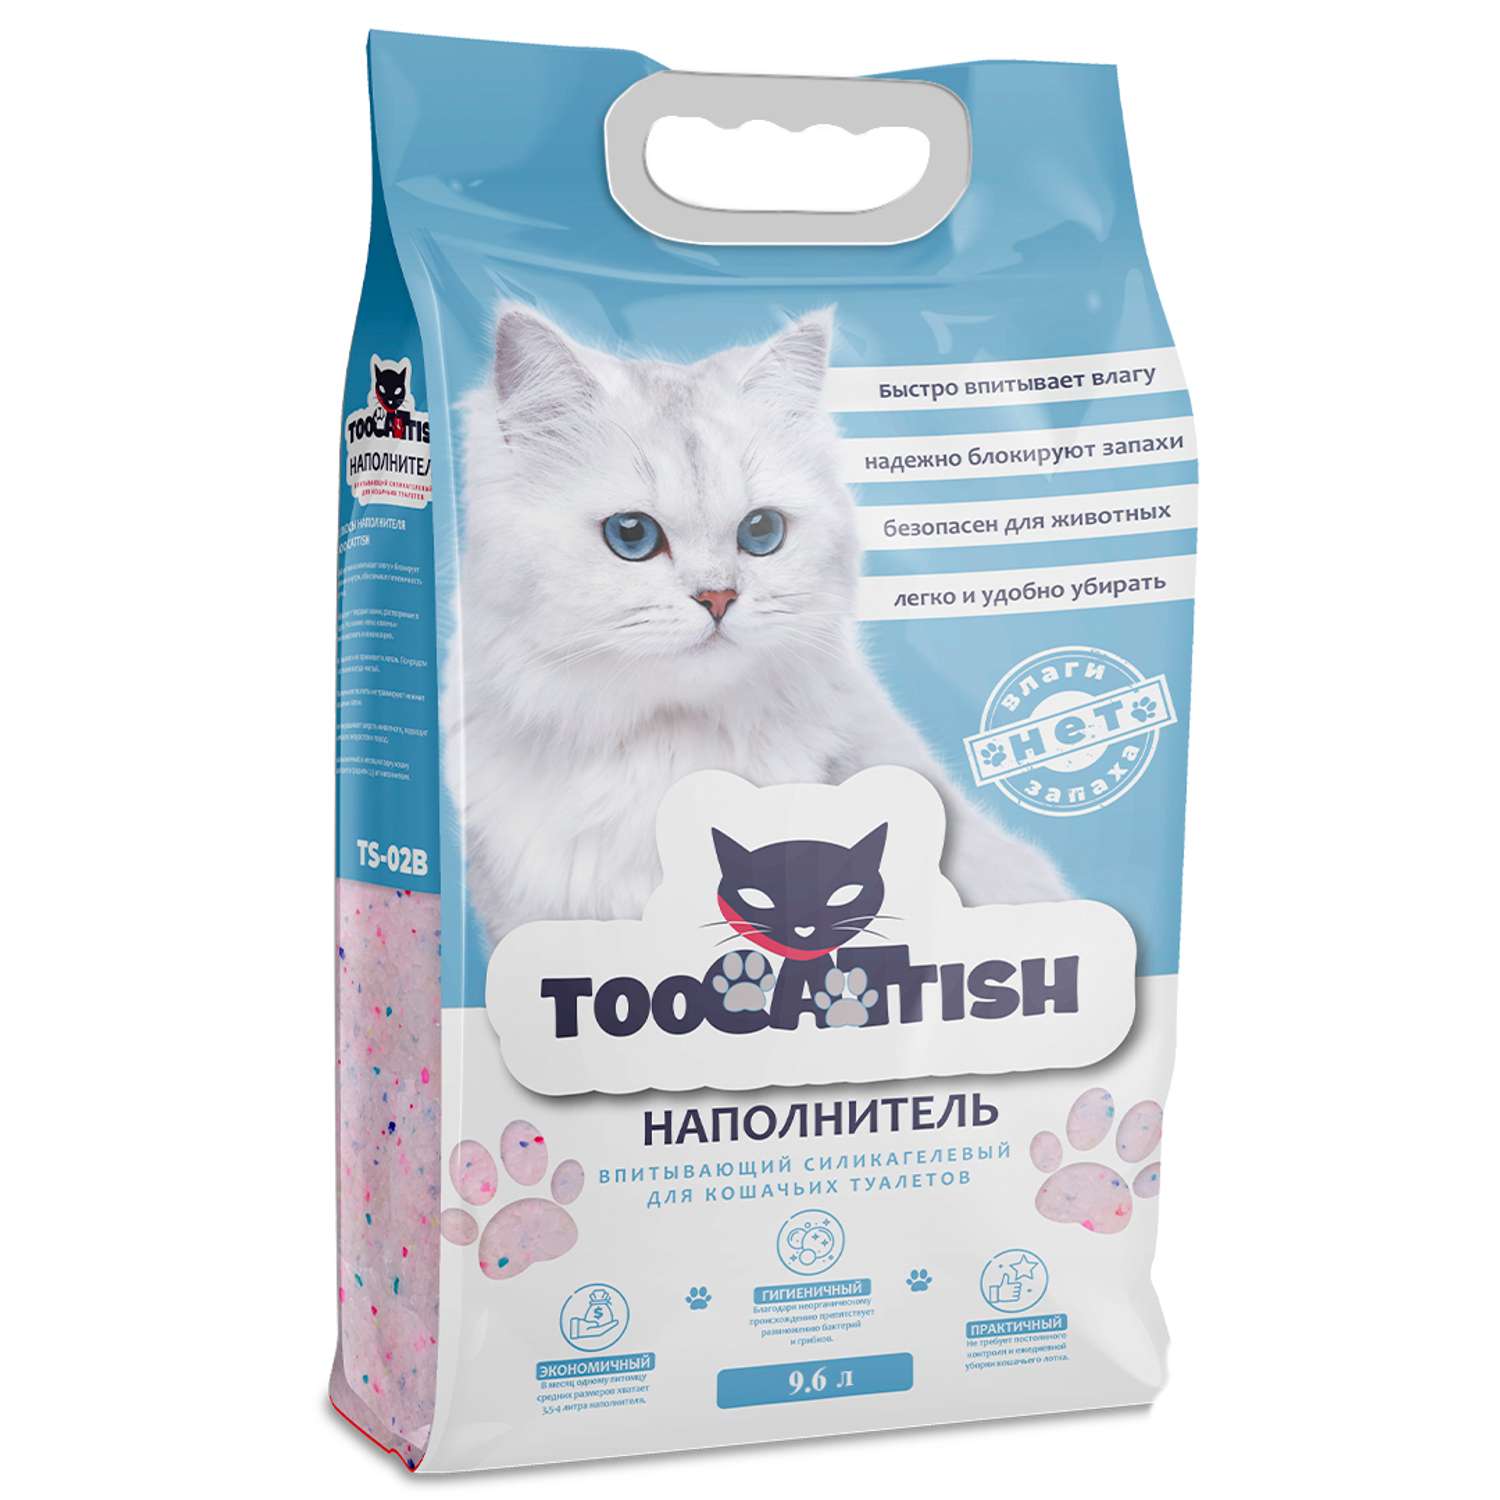 Наполнитель для кошек TooCattish Blue 9.6 л - фото 1